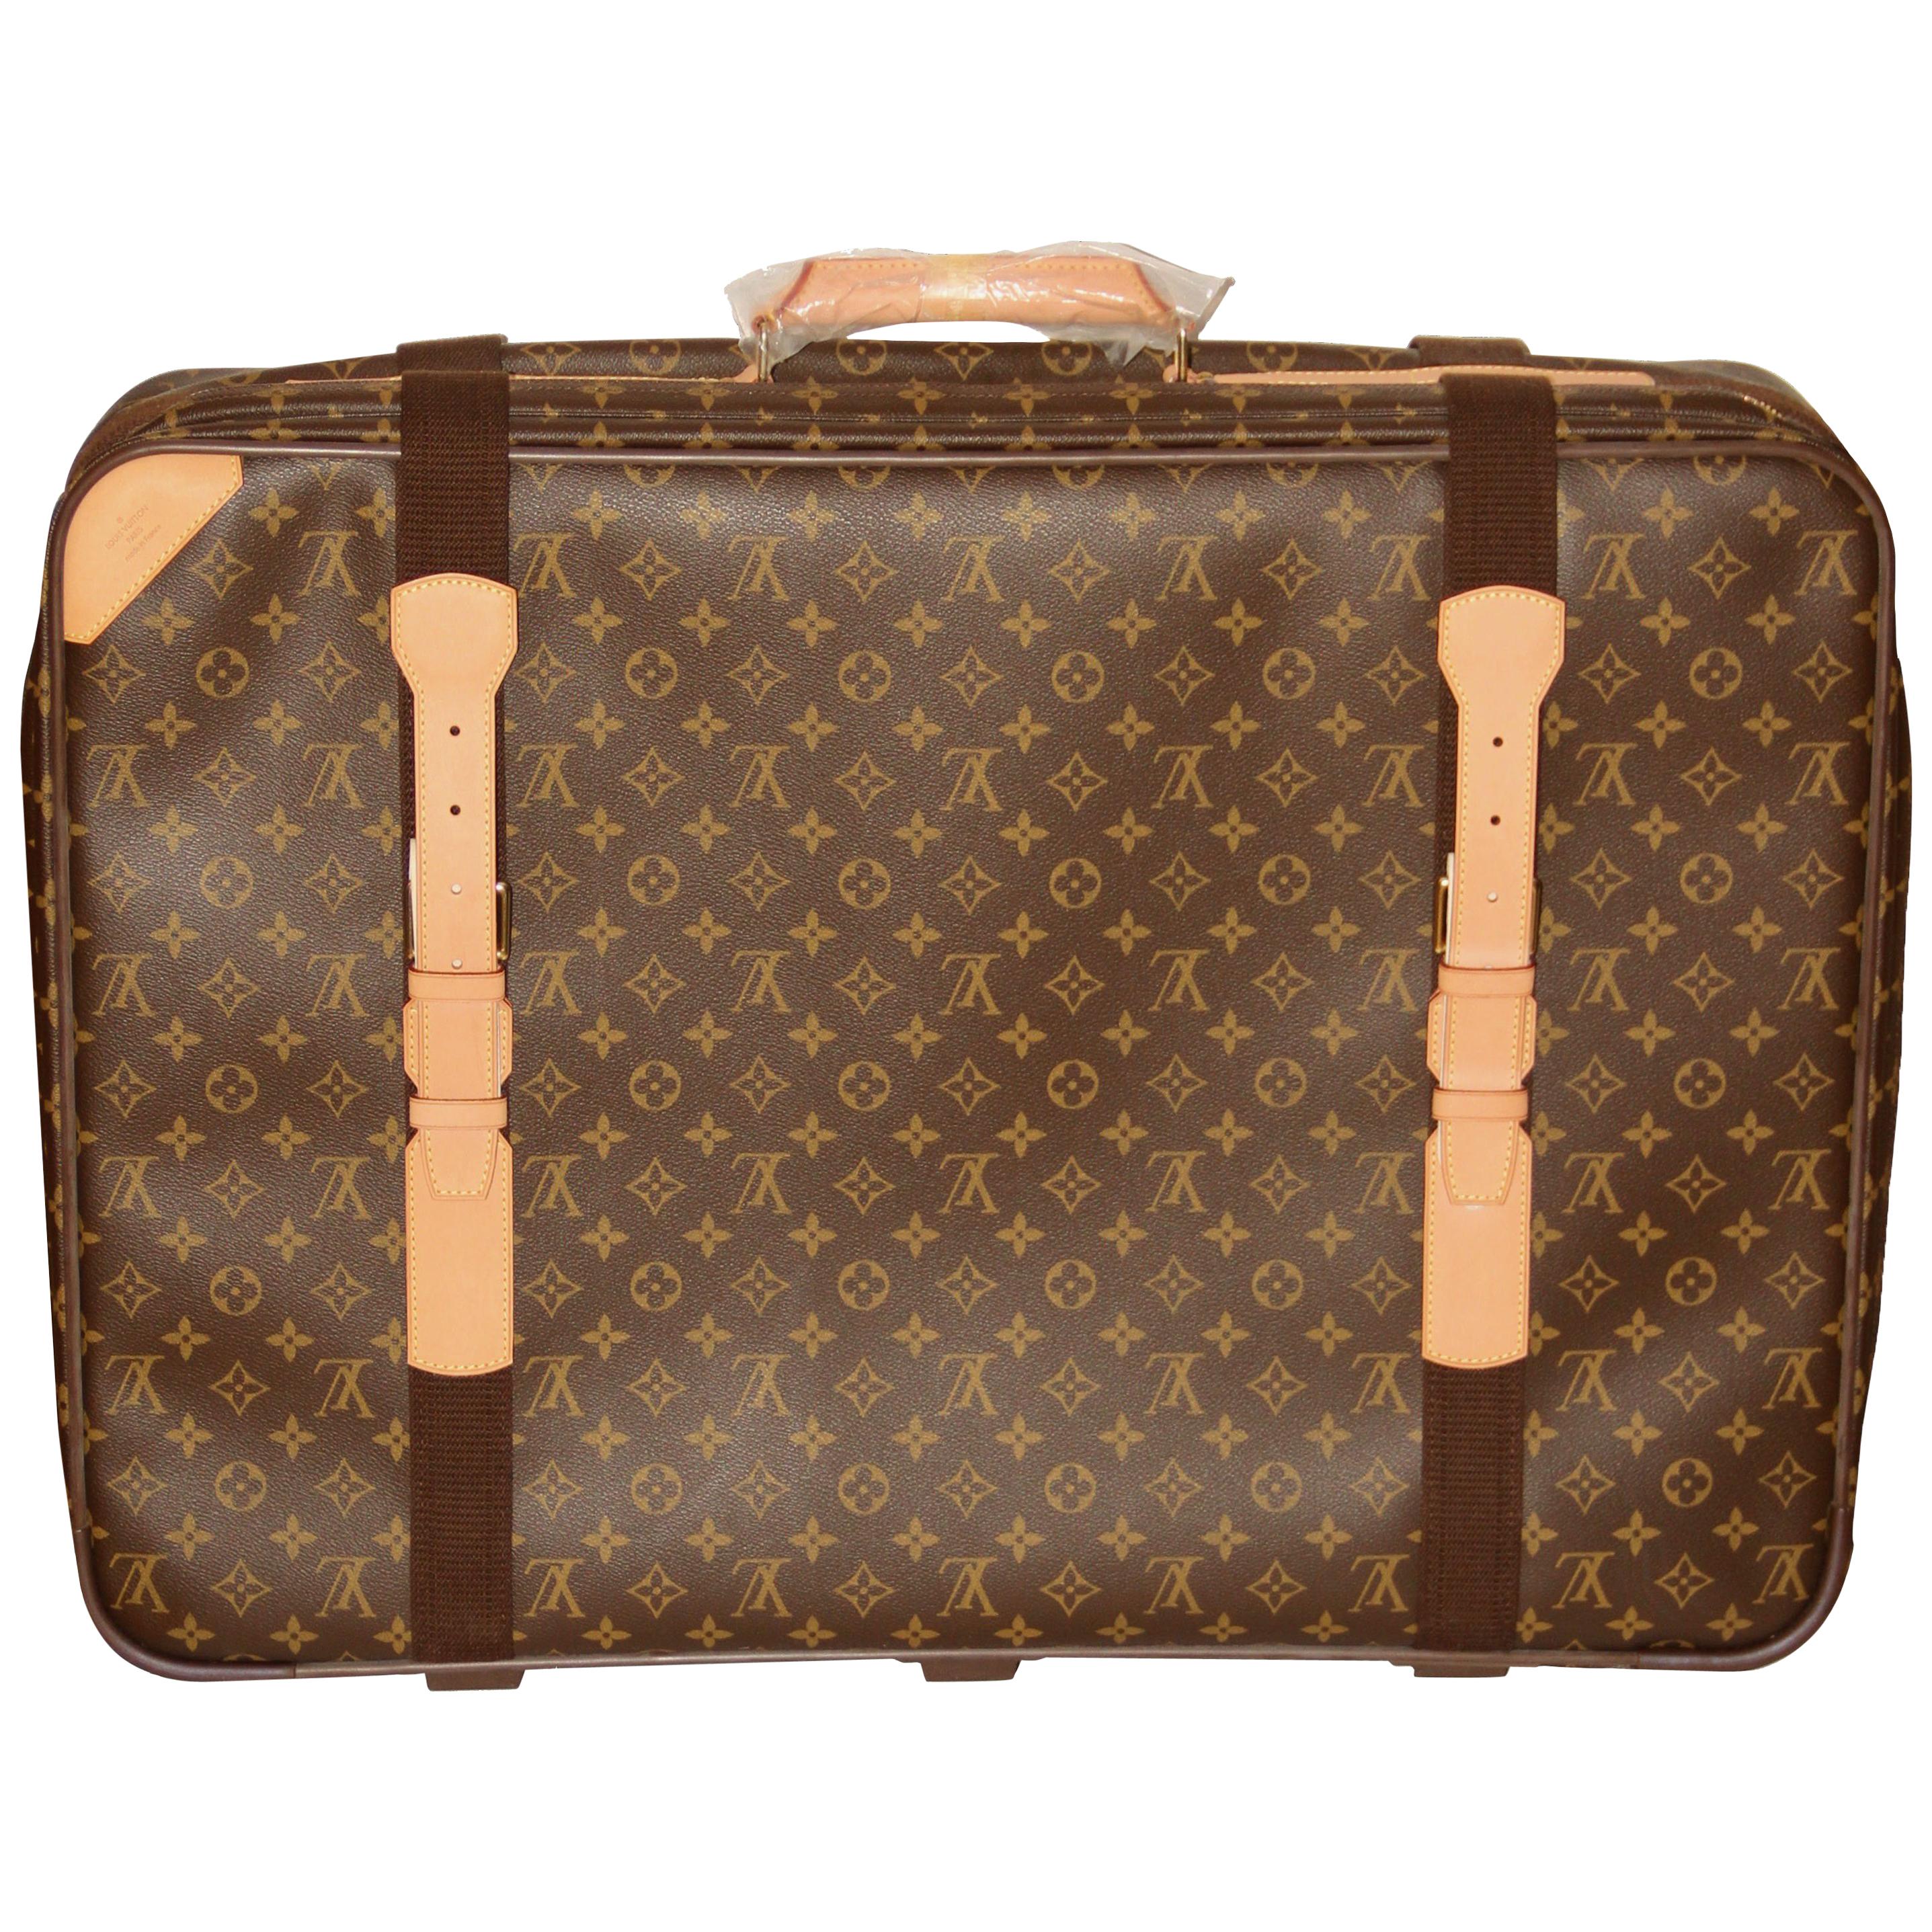 Louis Vuitton Satellite 65 Monogram Suitcase